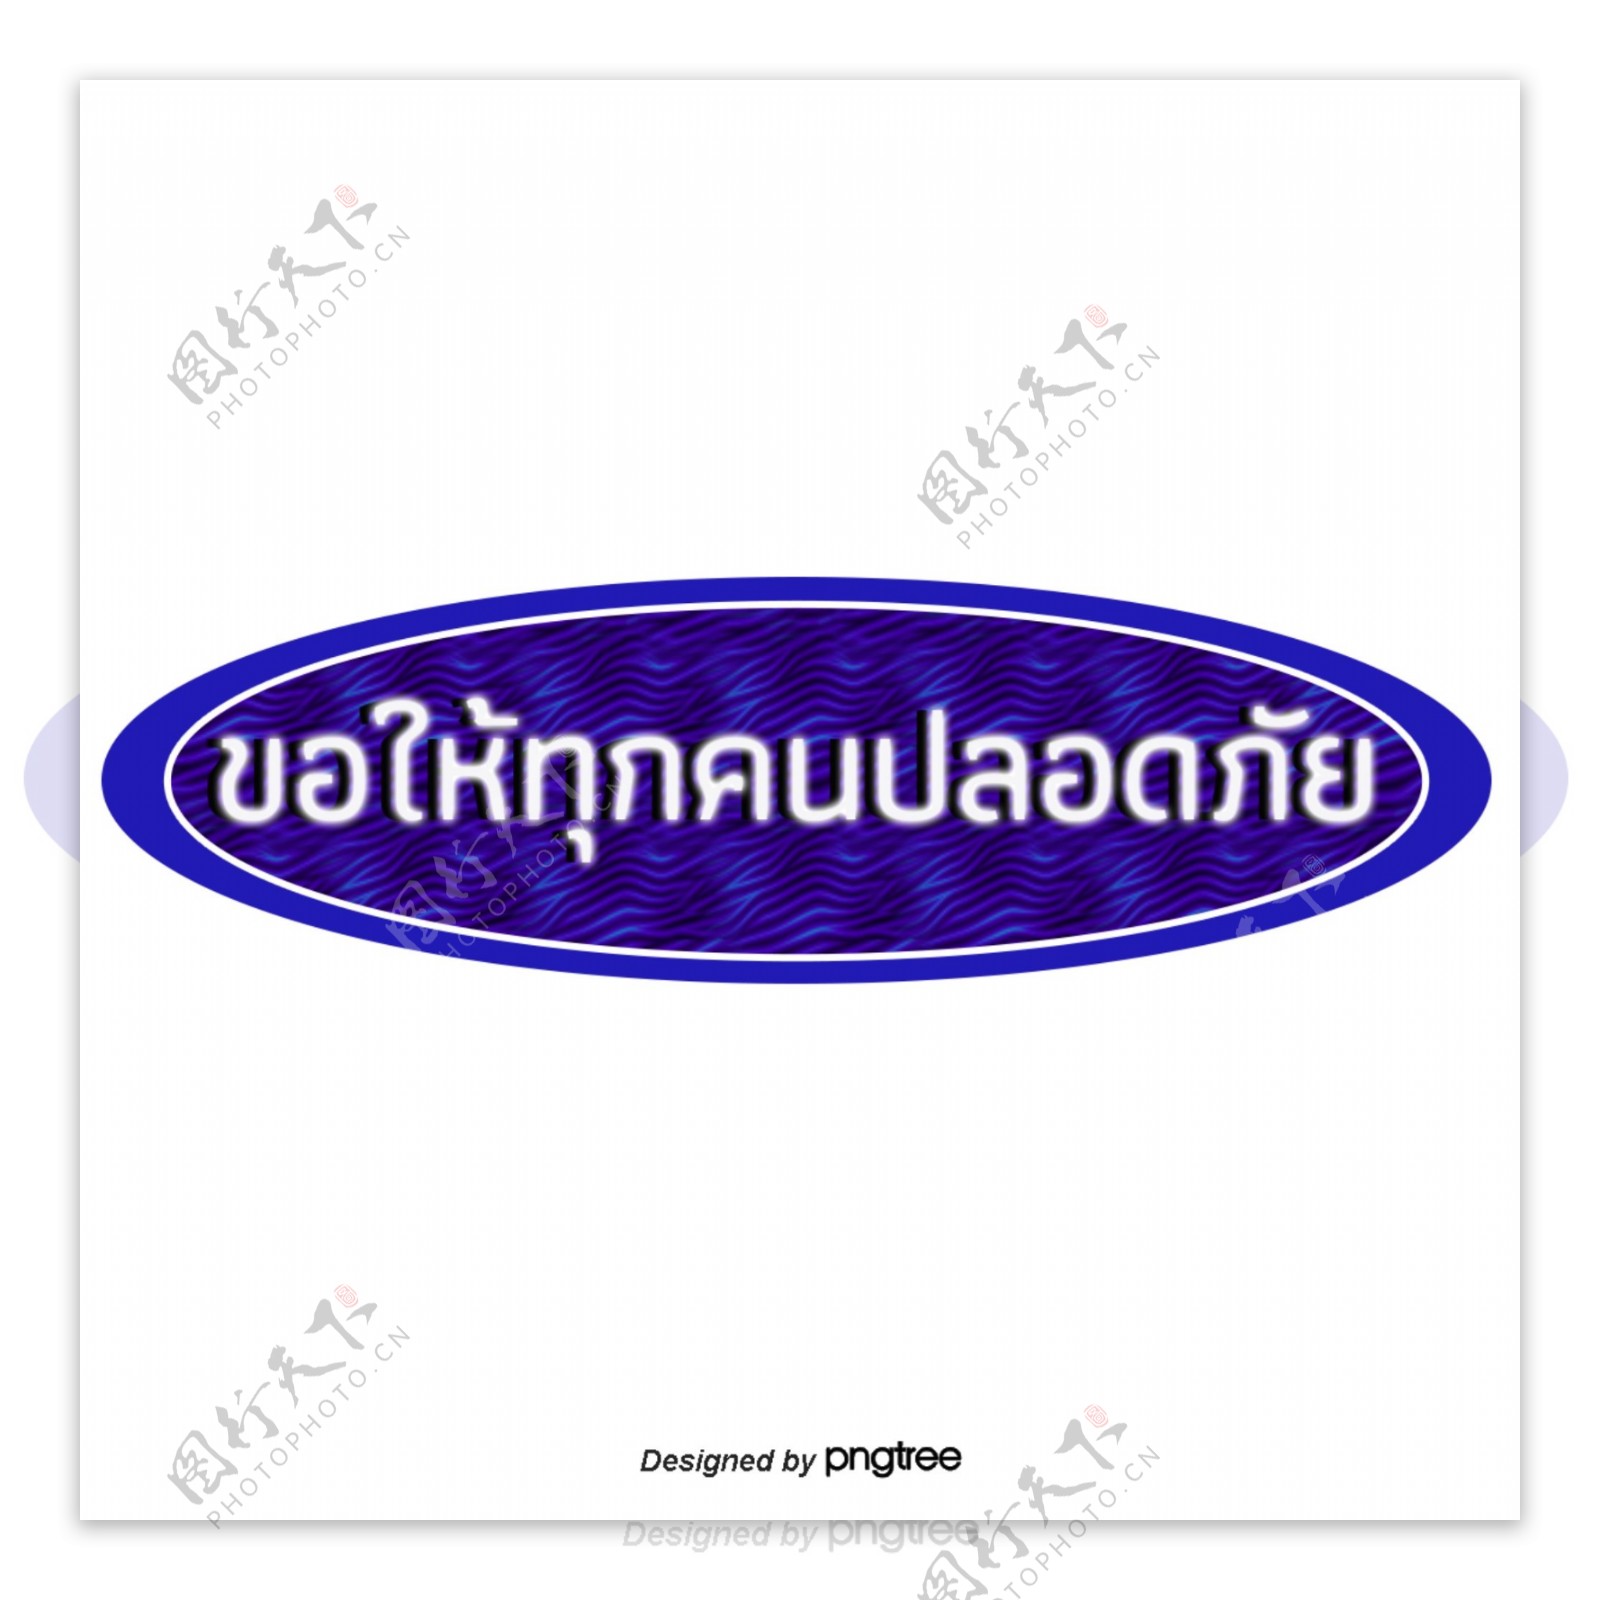 泰国白色蓝色边缘文本字体